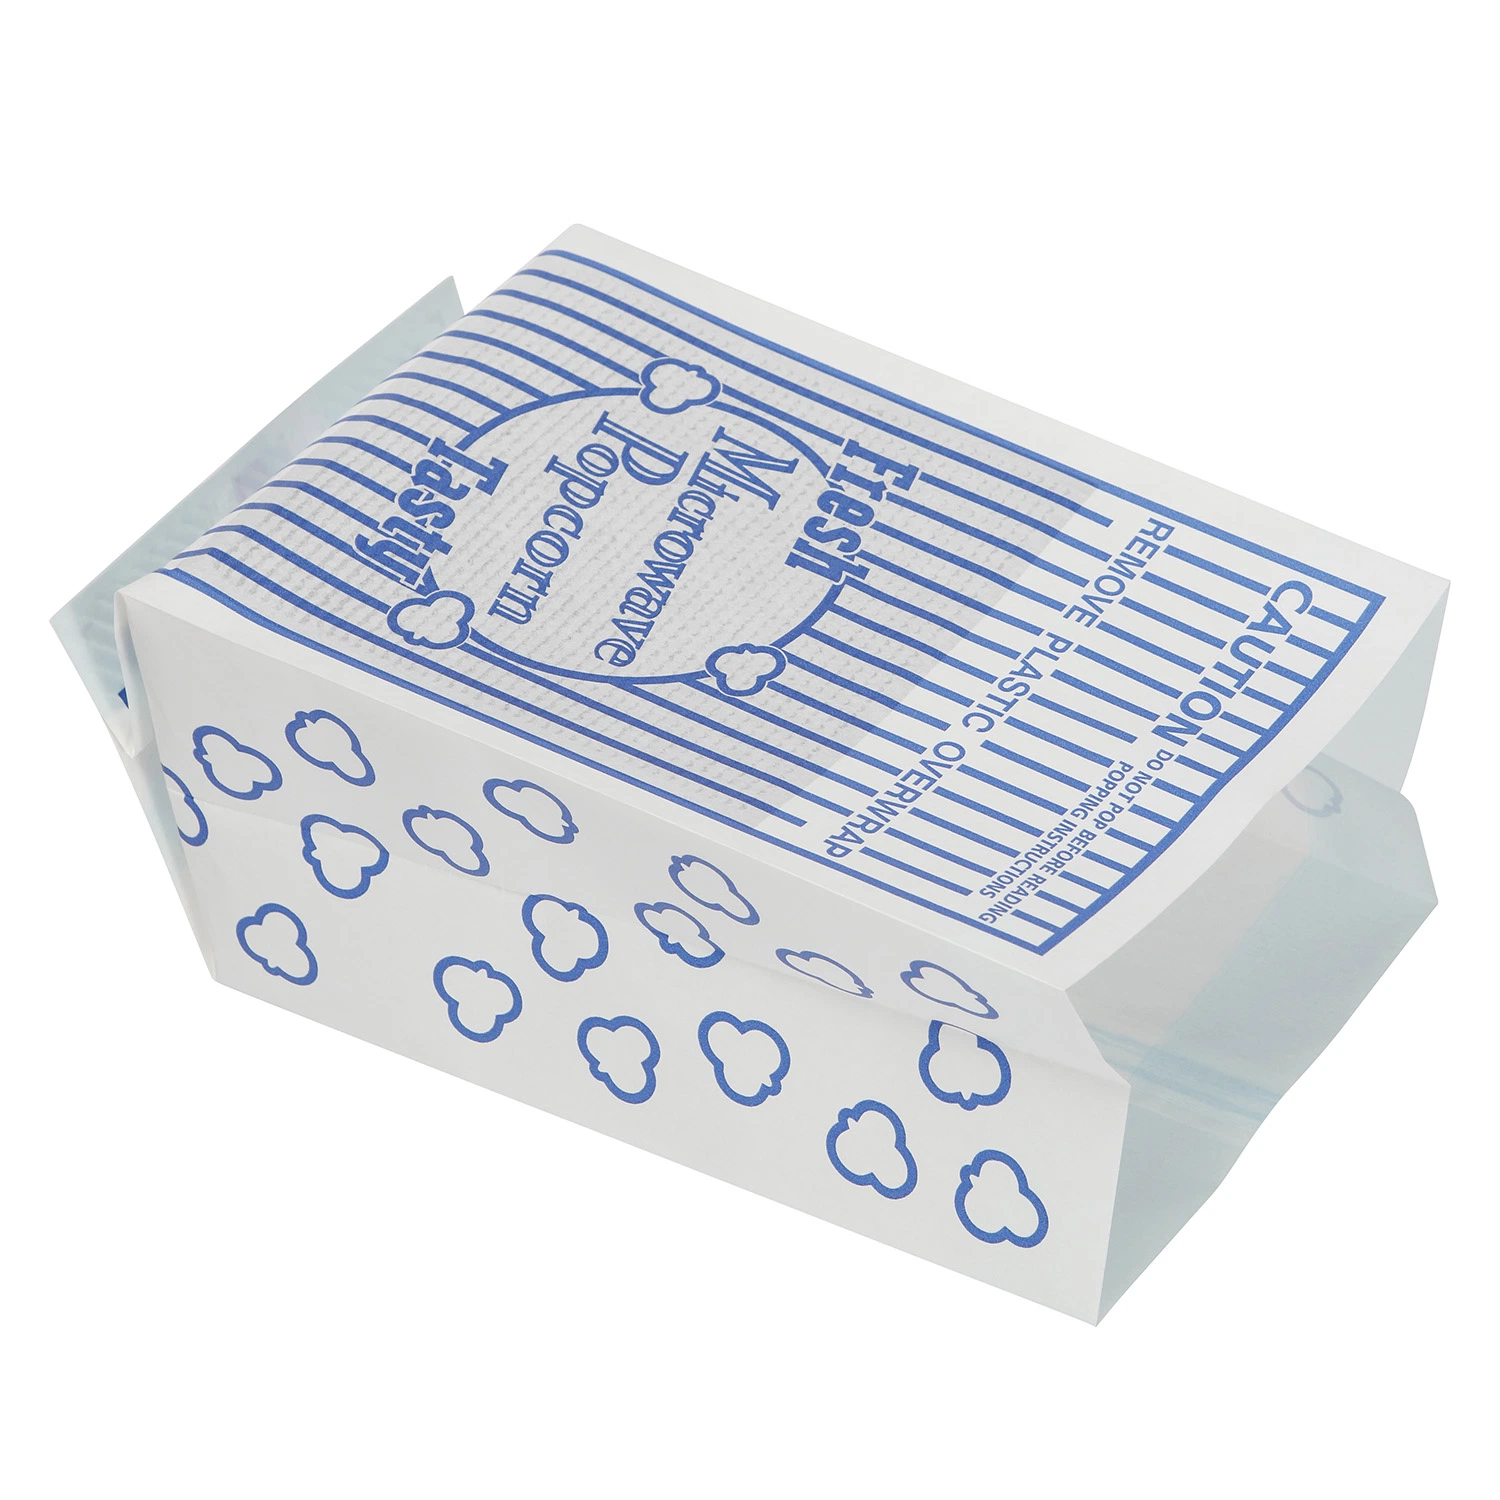 Utilizado para embalagens de alimentos sacos de papel de alta qualidade à prova de aquecimento e explosão Saco de papel Popcorn com forno de microondas